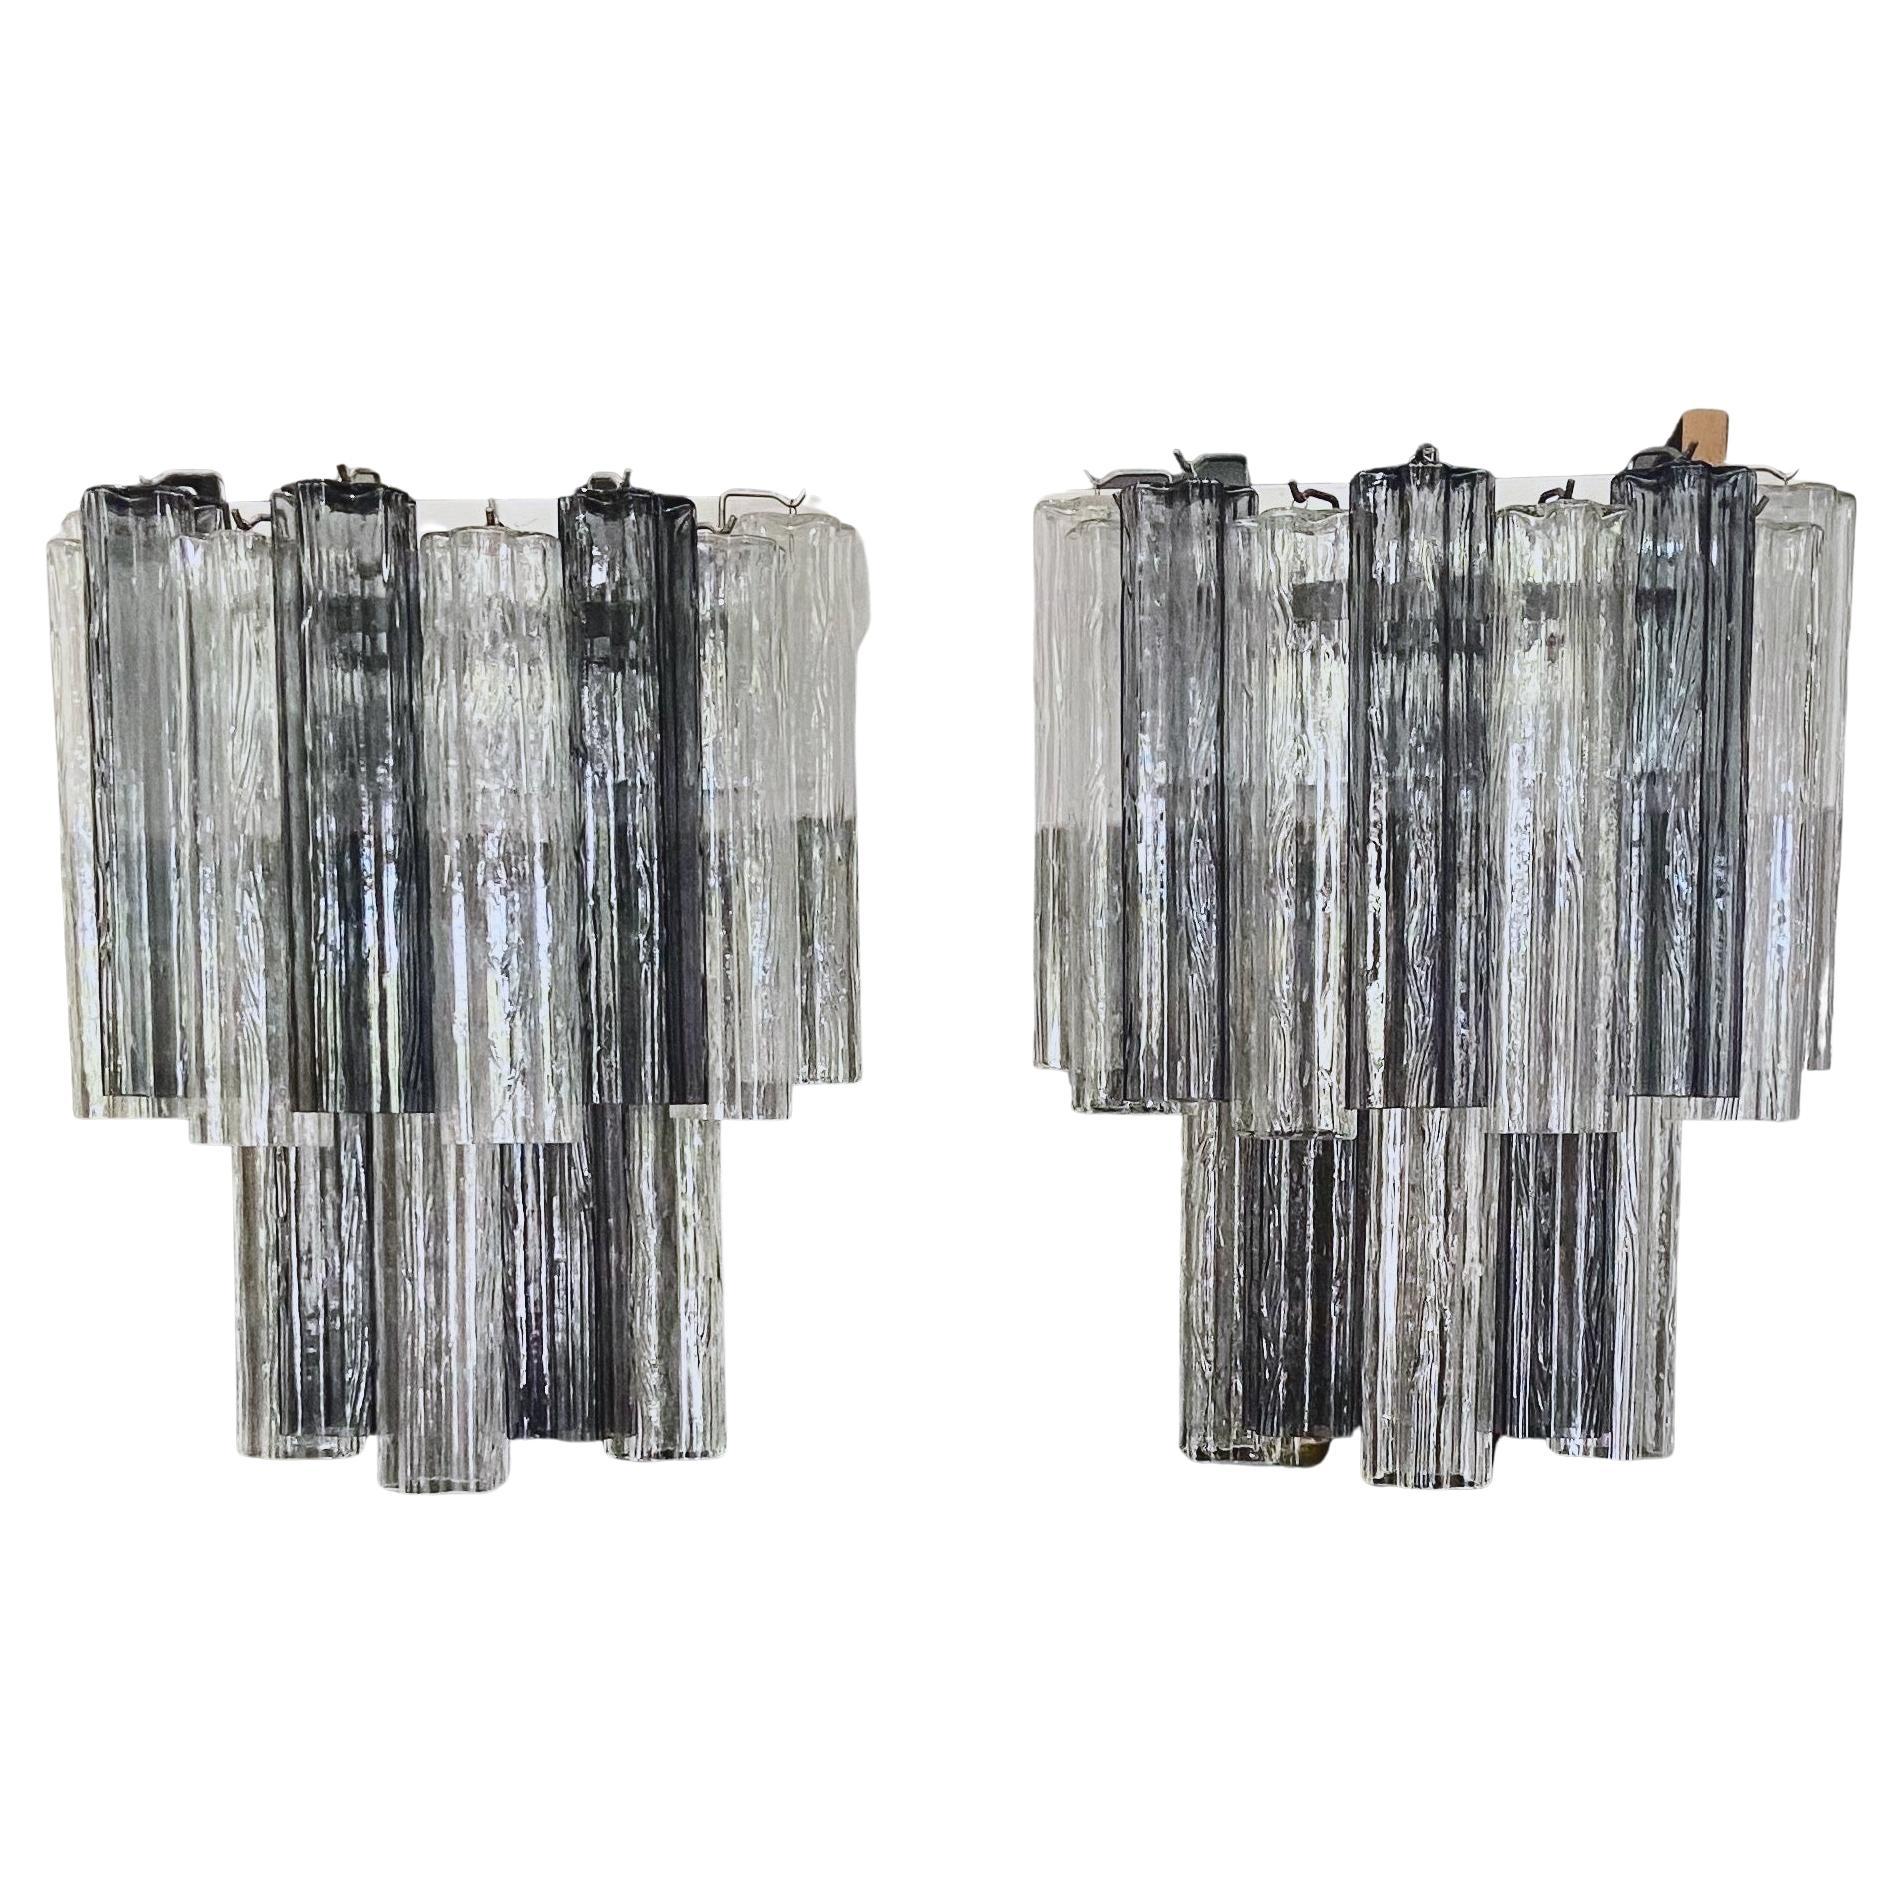 Zwei große italienische Tronchi-Wandleuchter aus Glas mit verchromter Rückwand. Die Farbe der Murano-Glasröhren ist eine Kombination aus klar und rauchgrau. Jede Leuchte ist mit 6 Kandelaber-Glühbirnen bestückt. 